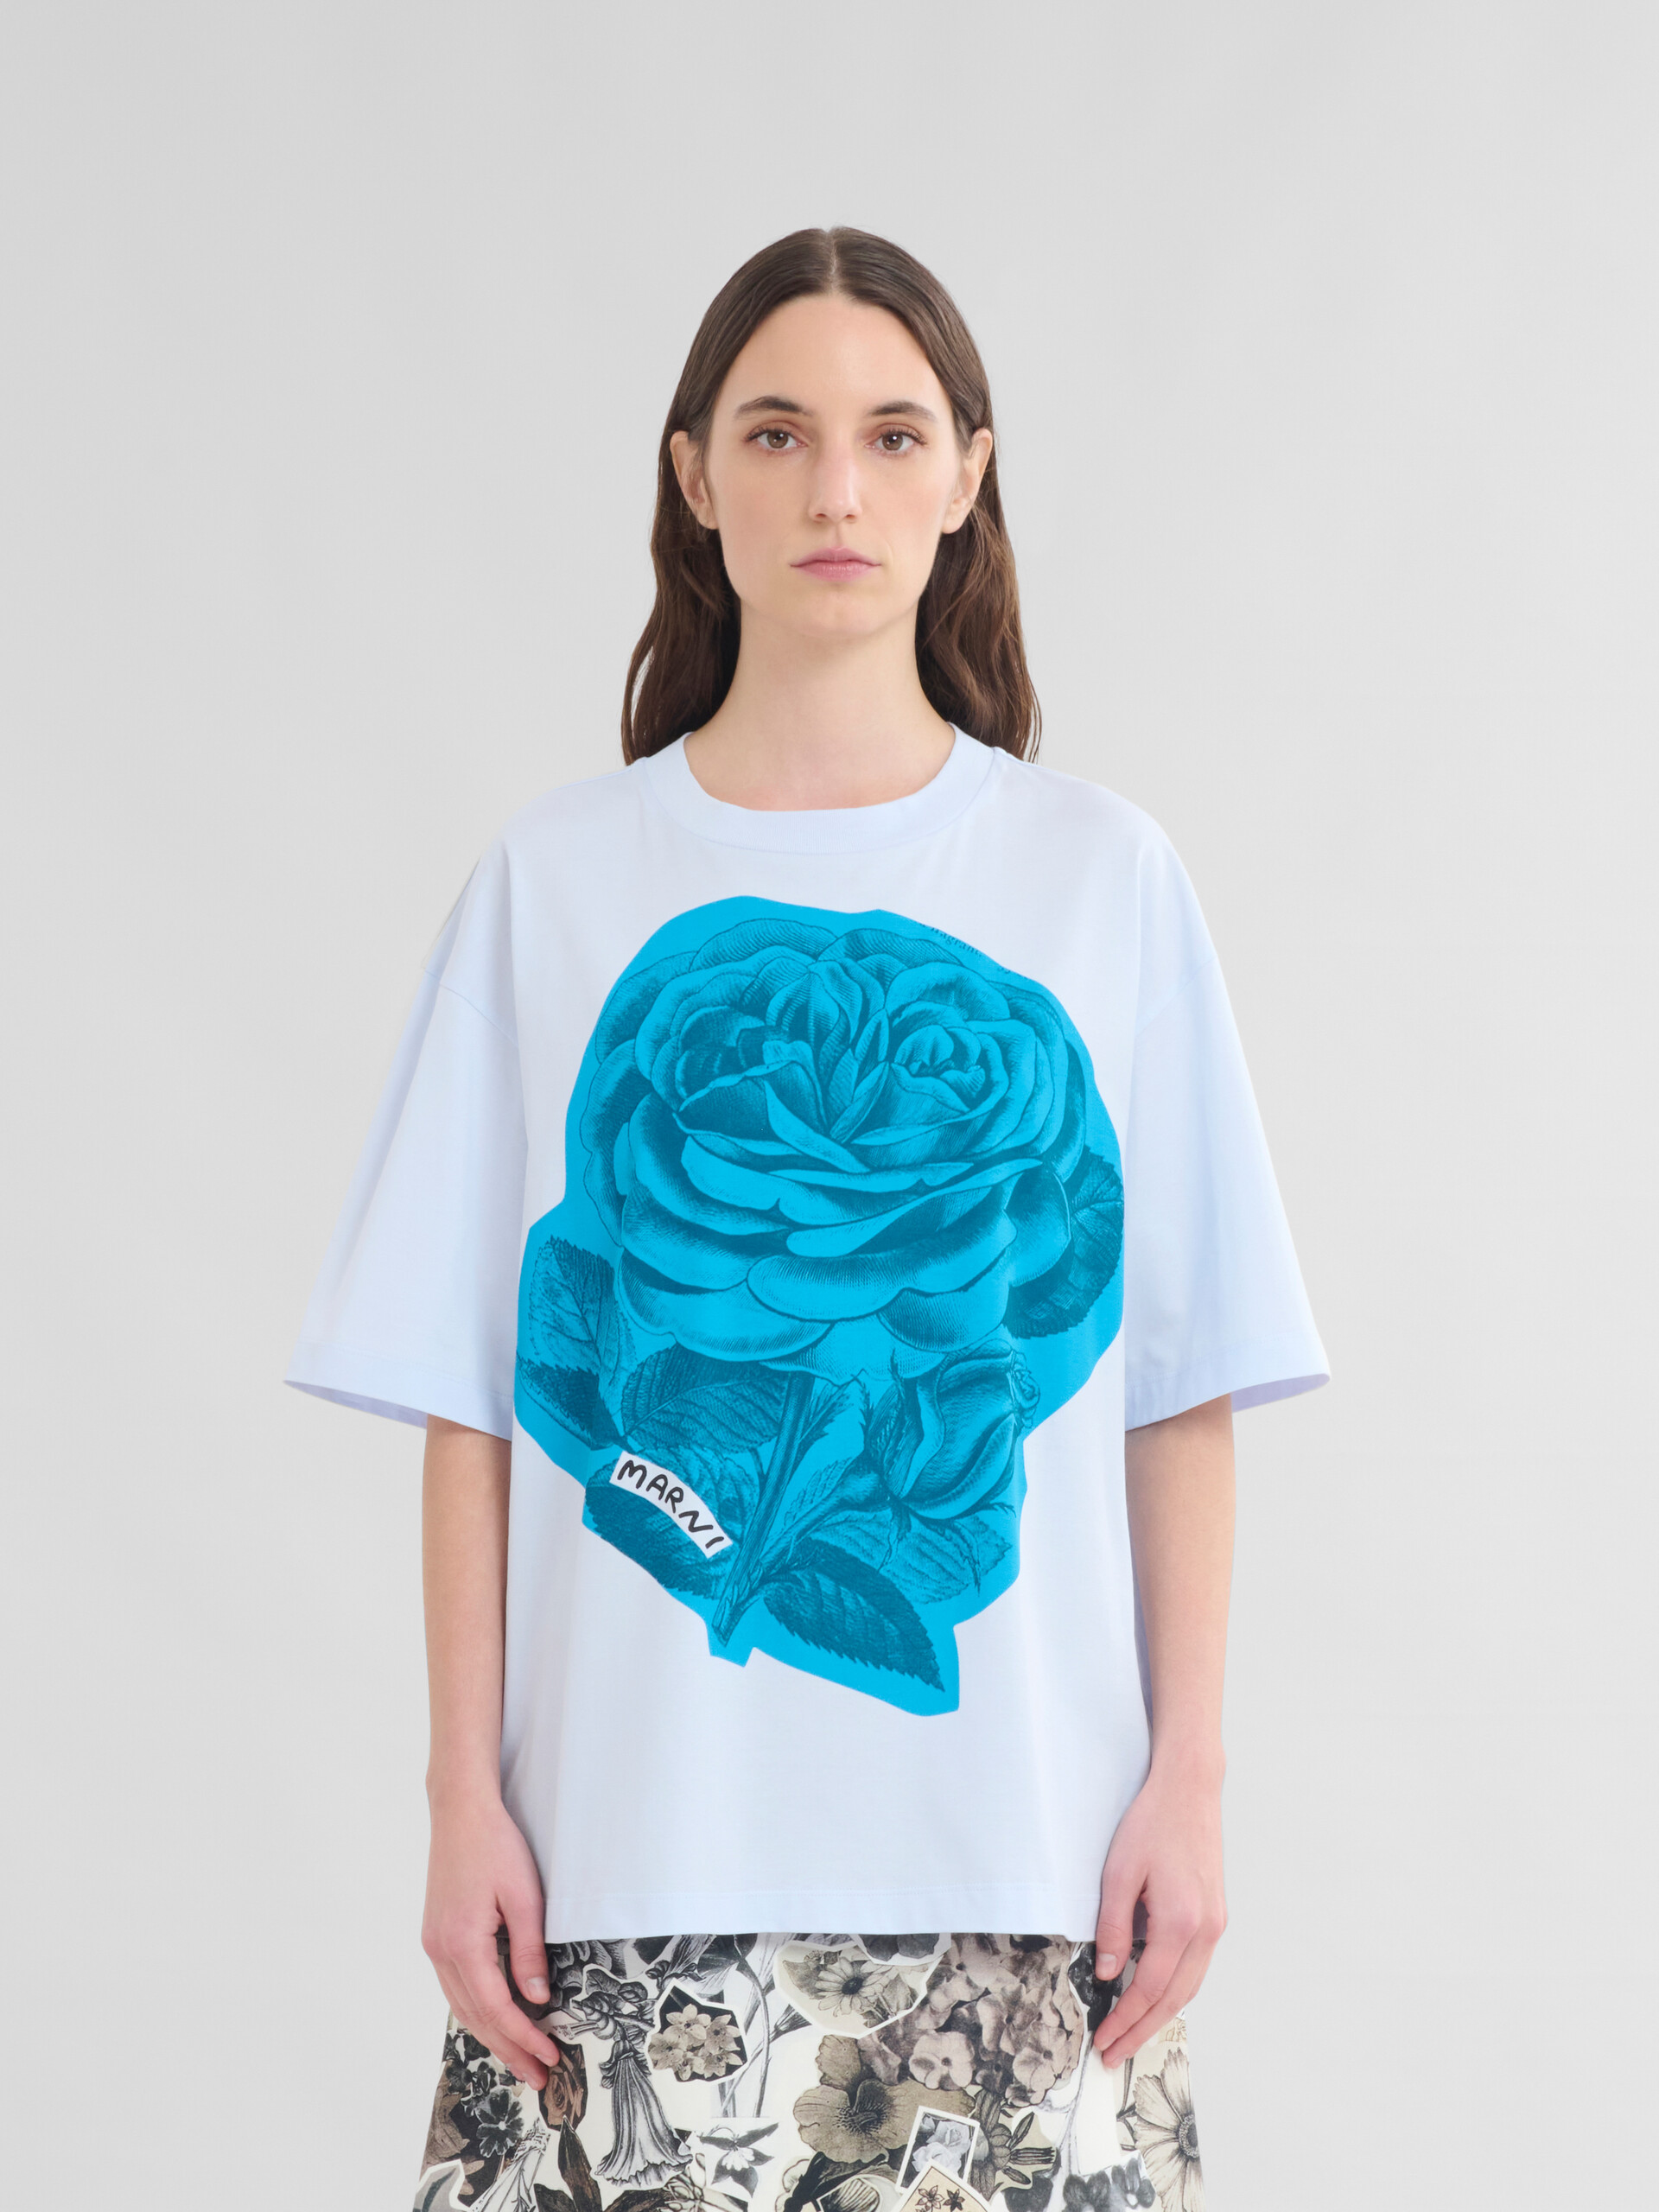 Blaues T-Shirt aus Baumwolle mit Maxi-Blumen-Print - T-shirts - Image 2